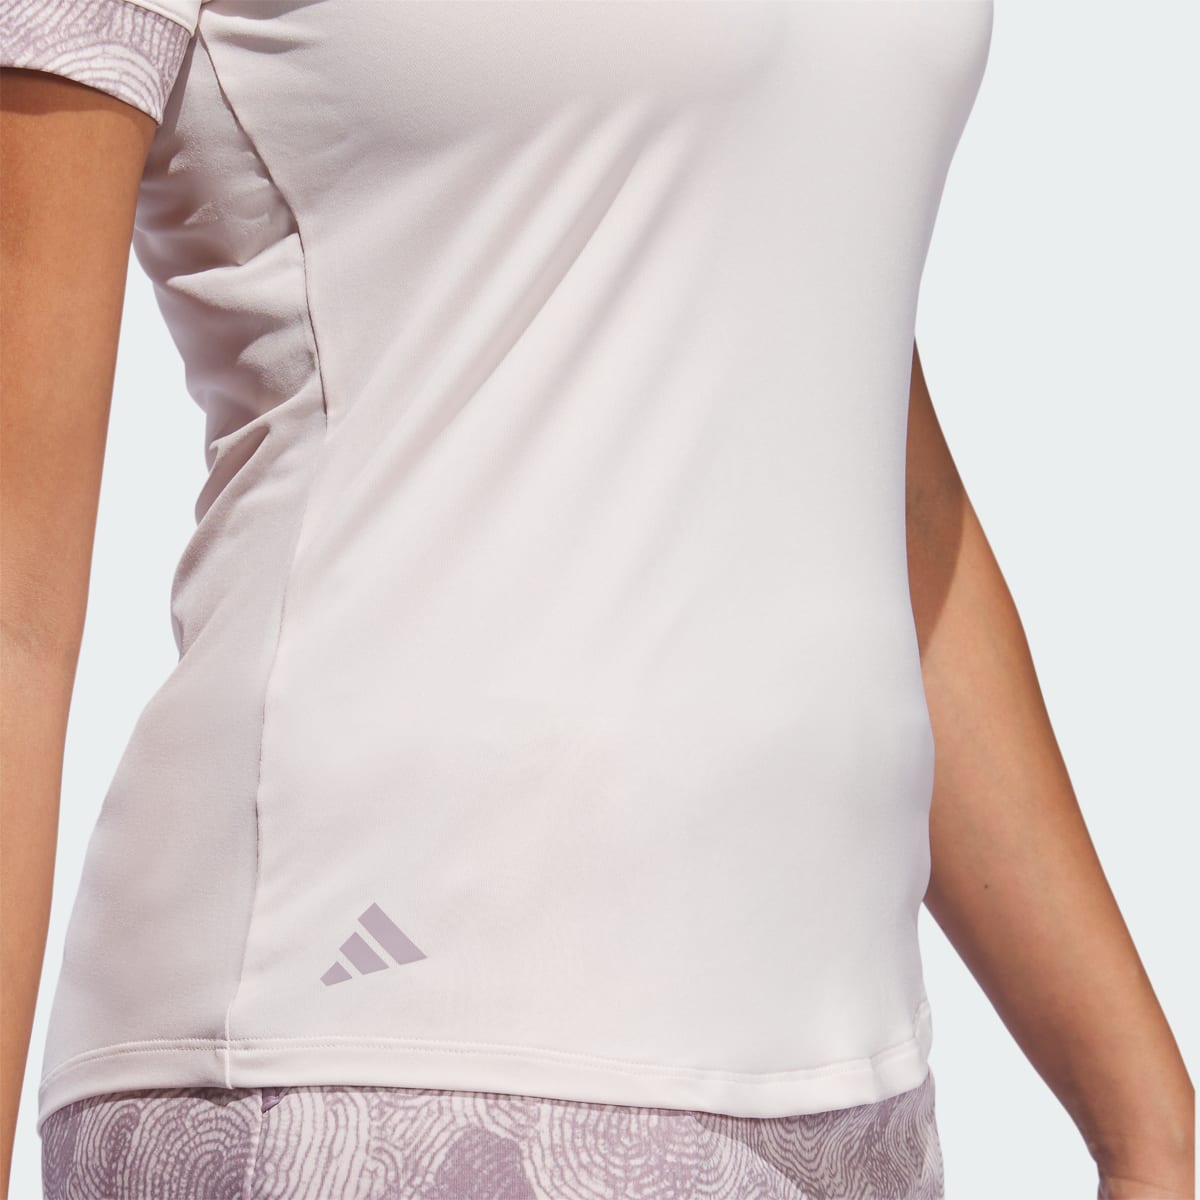 Adidas Ultimate365 Printed Polo Shirt. 7